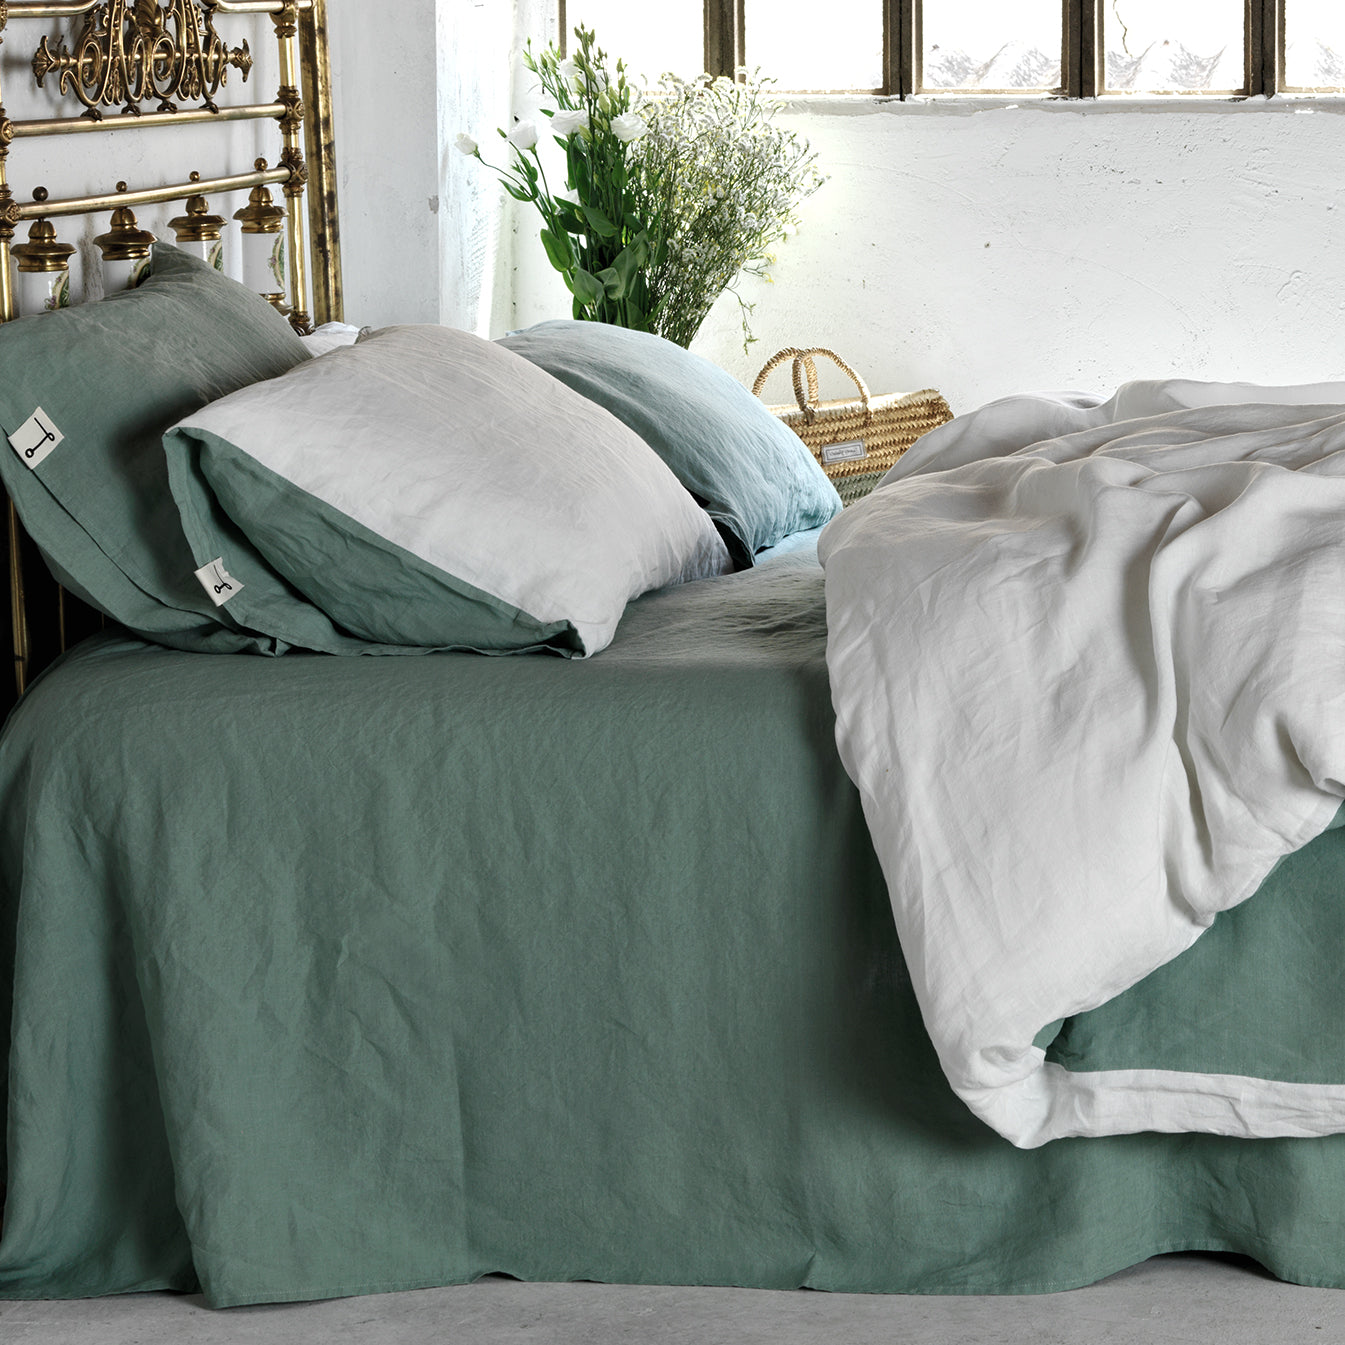 Juego de cama de lino verde menta y blanco. Habitación encalada blanca y cabezal de bronce.